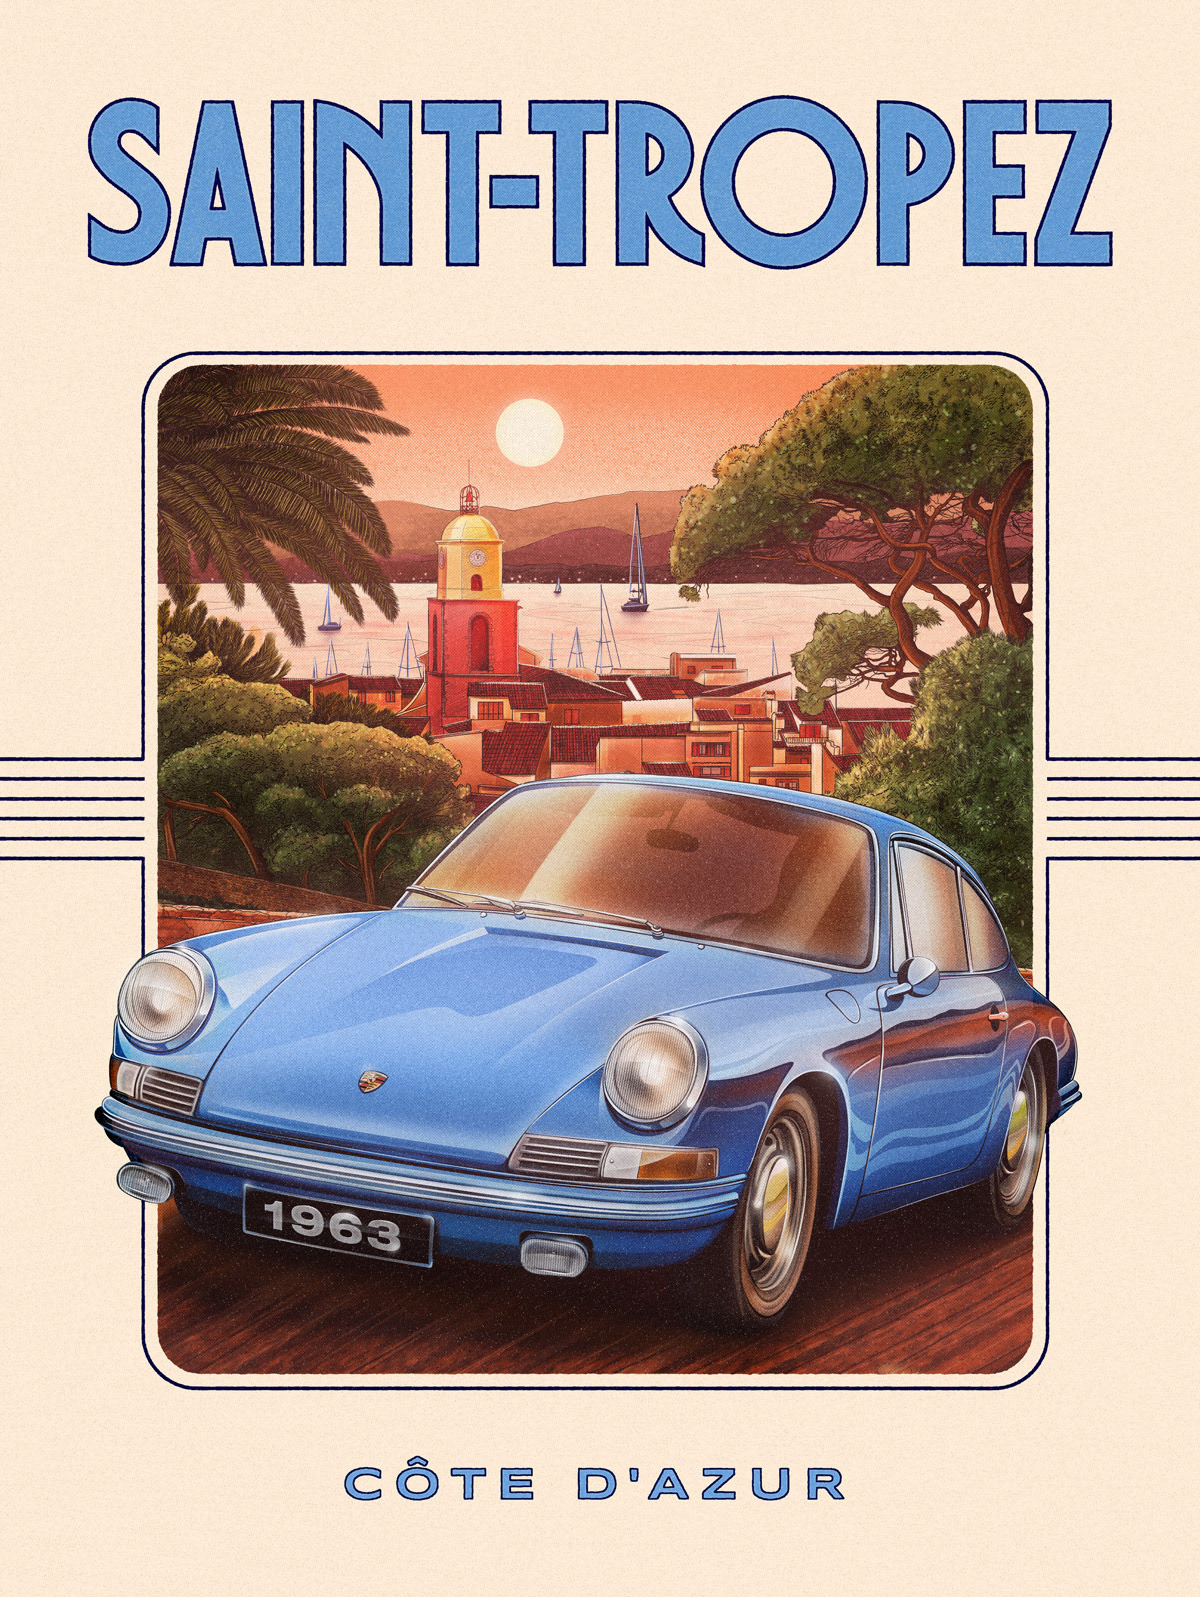 Saint-Tropez Porsche car ILLUSTRATION  lyon romain billaud Retro poster vintage car Porsche 911